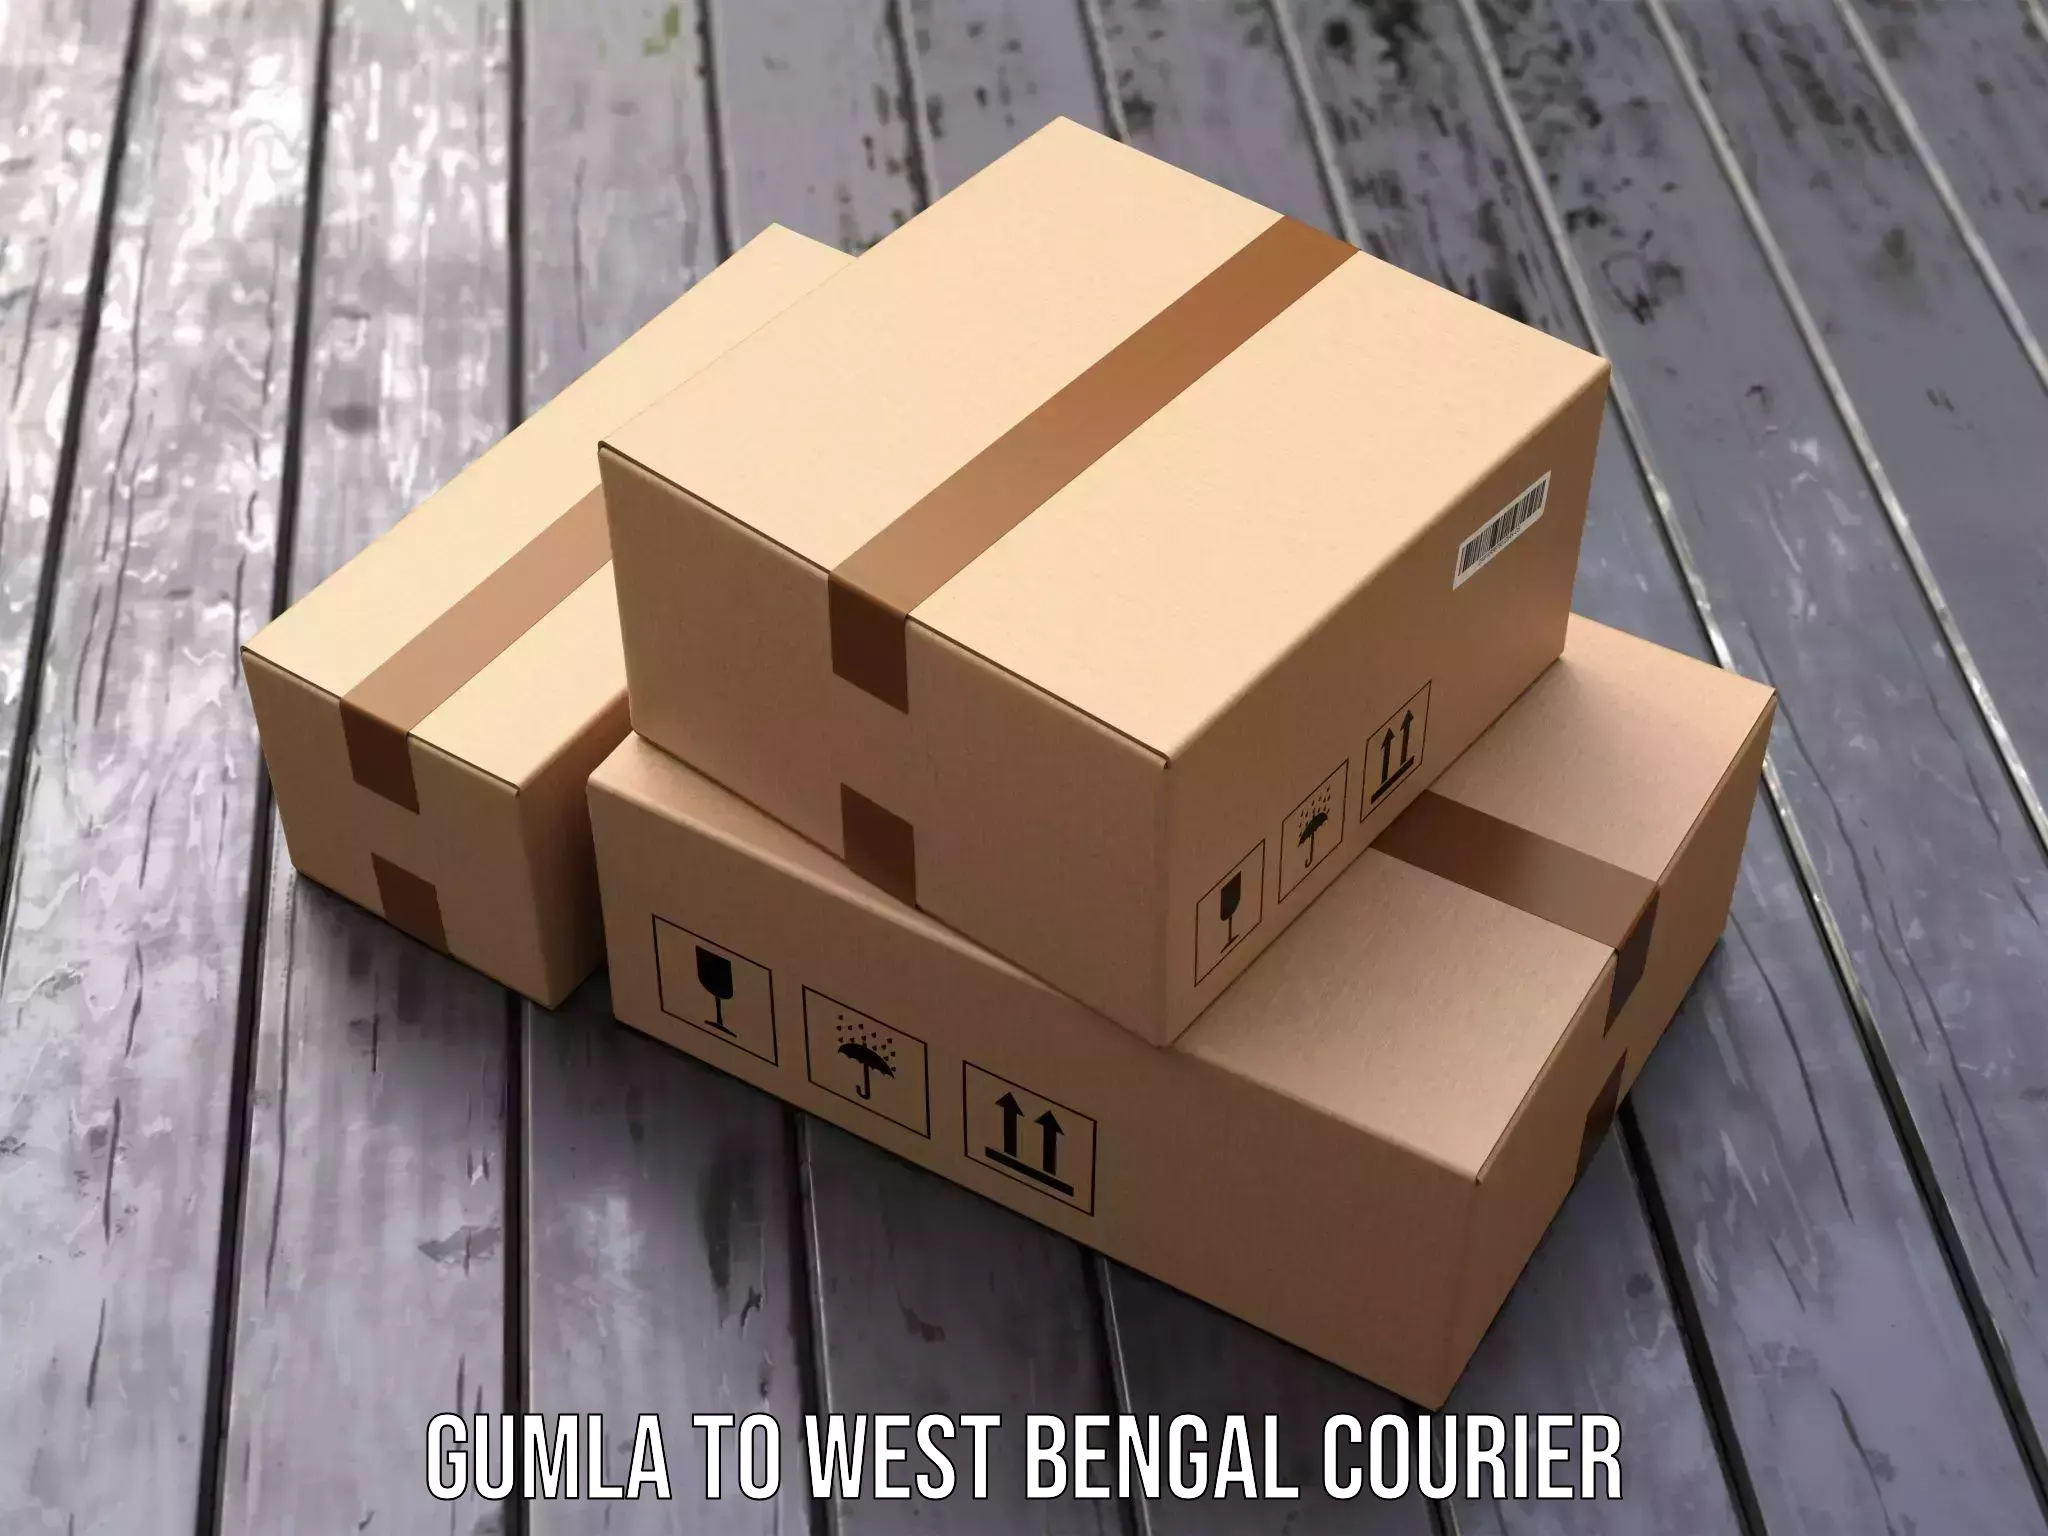 High-priority parcel service Gumla to Panagarh